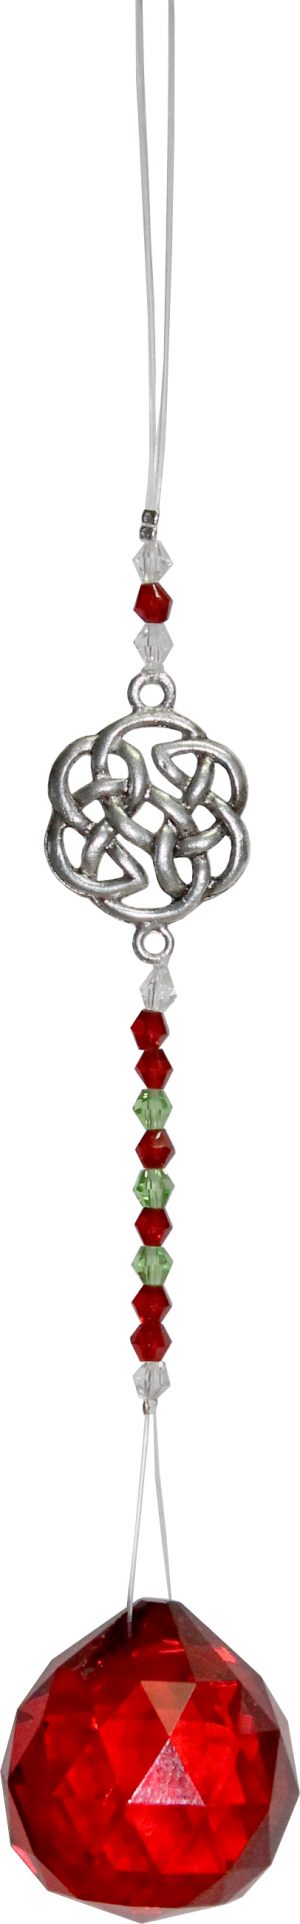 Anhänger Crystal Geschliffenes Glas mit Perlen & keltischem Knoten - Rot